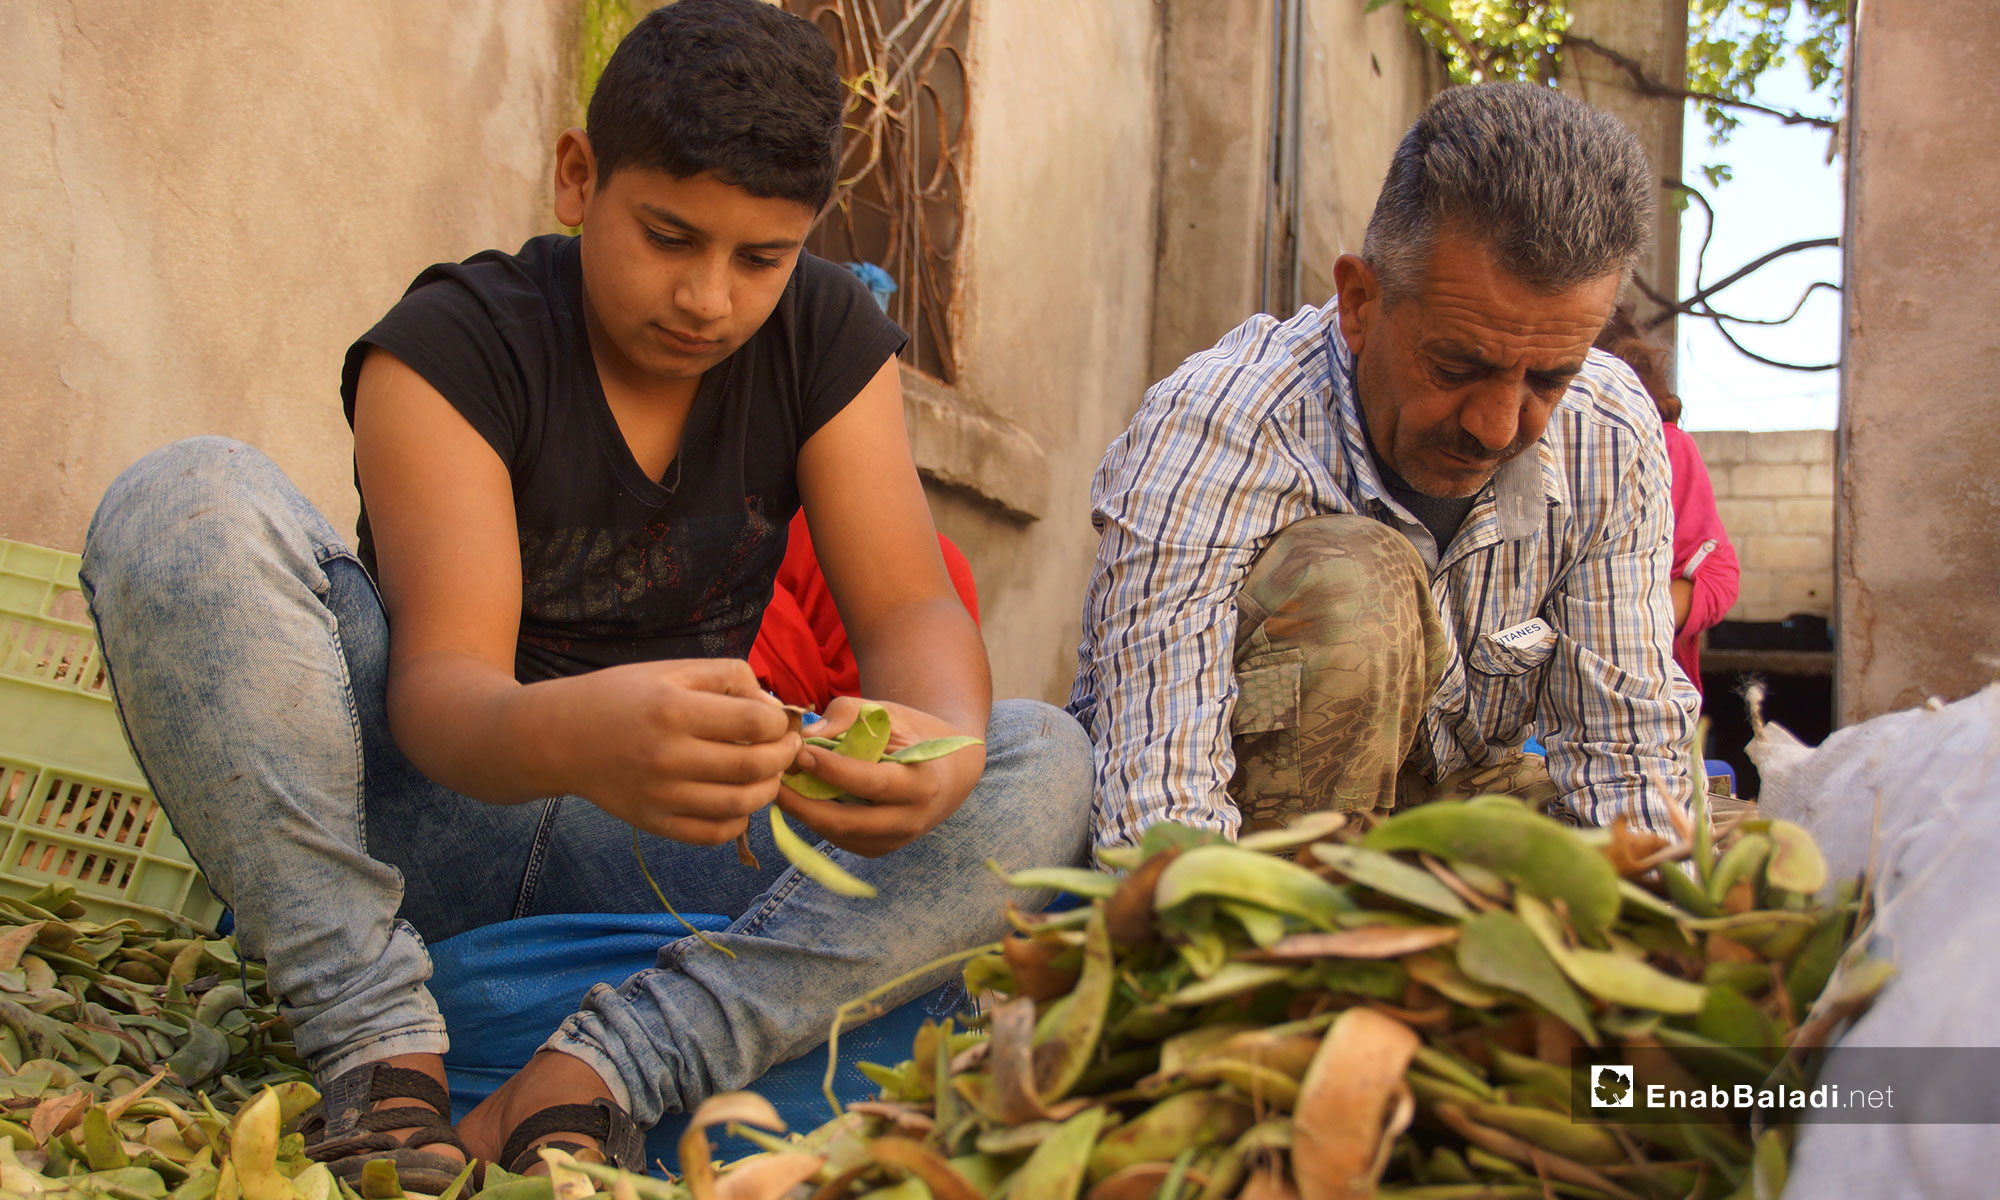 حصد محصول الكلاوي في سهل الغاب بريف حماة - 31 من تشرين الأول 2018 (عنب بلدي)